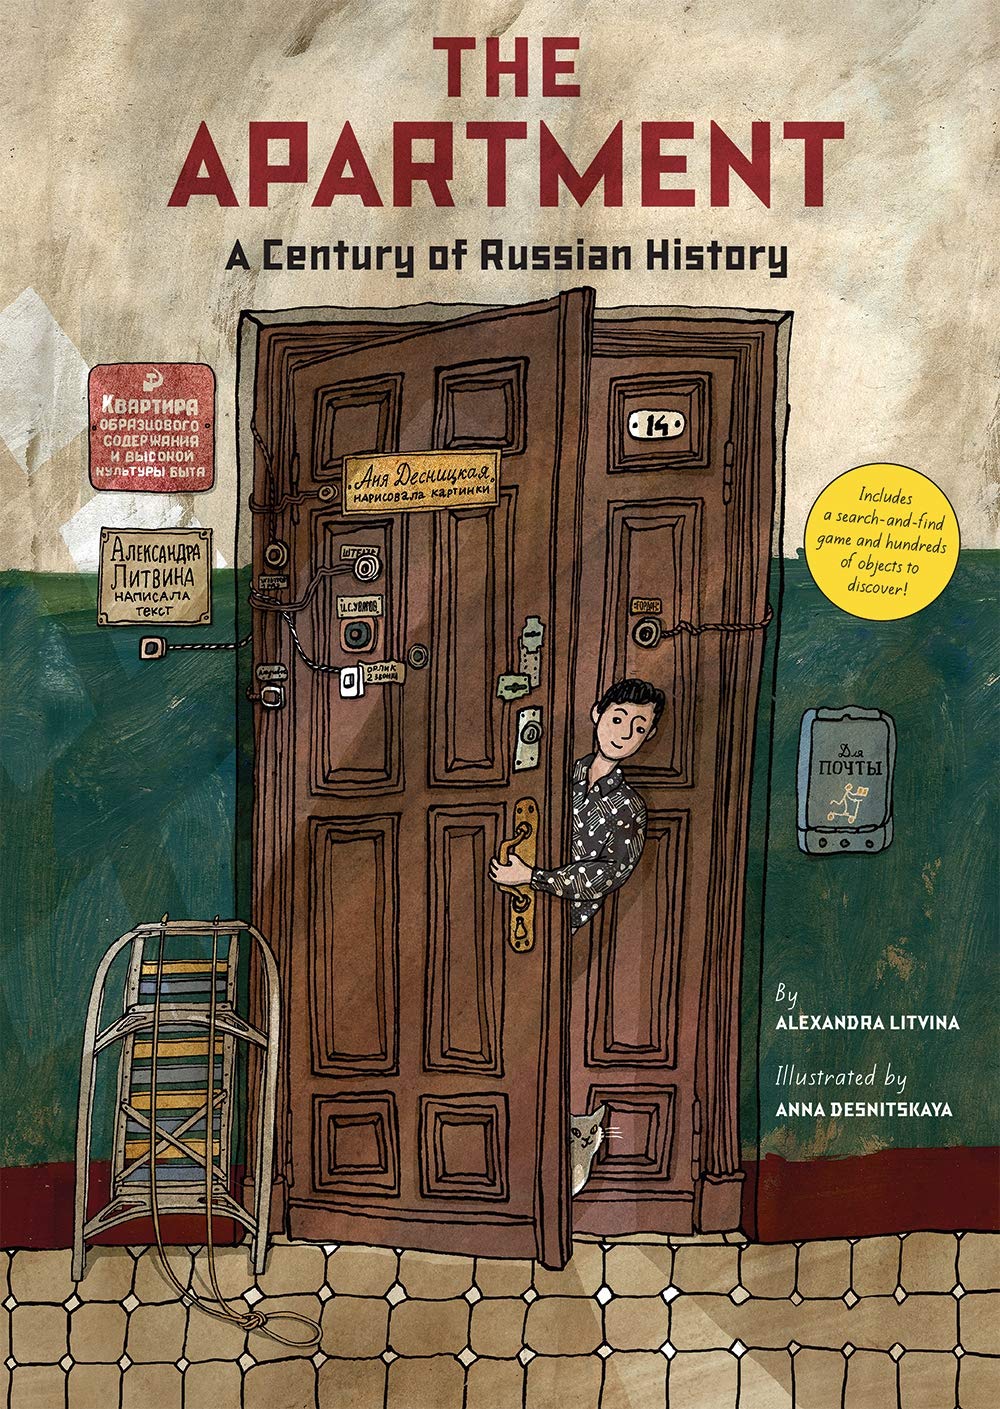 【瑕疵特惠】The Apartment，公寓:一个世纪的俄罗斯历史 儿童绘本